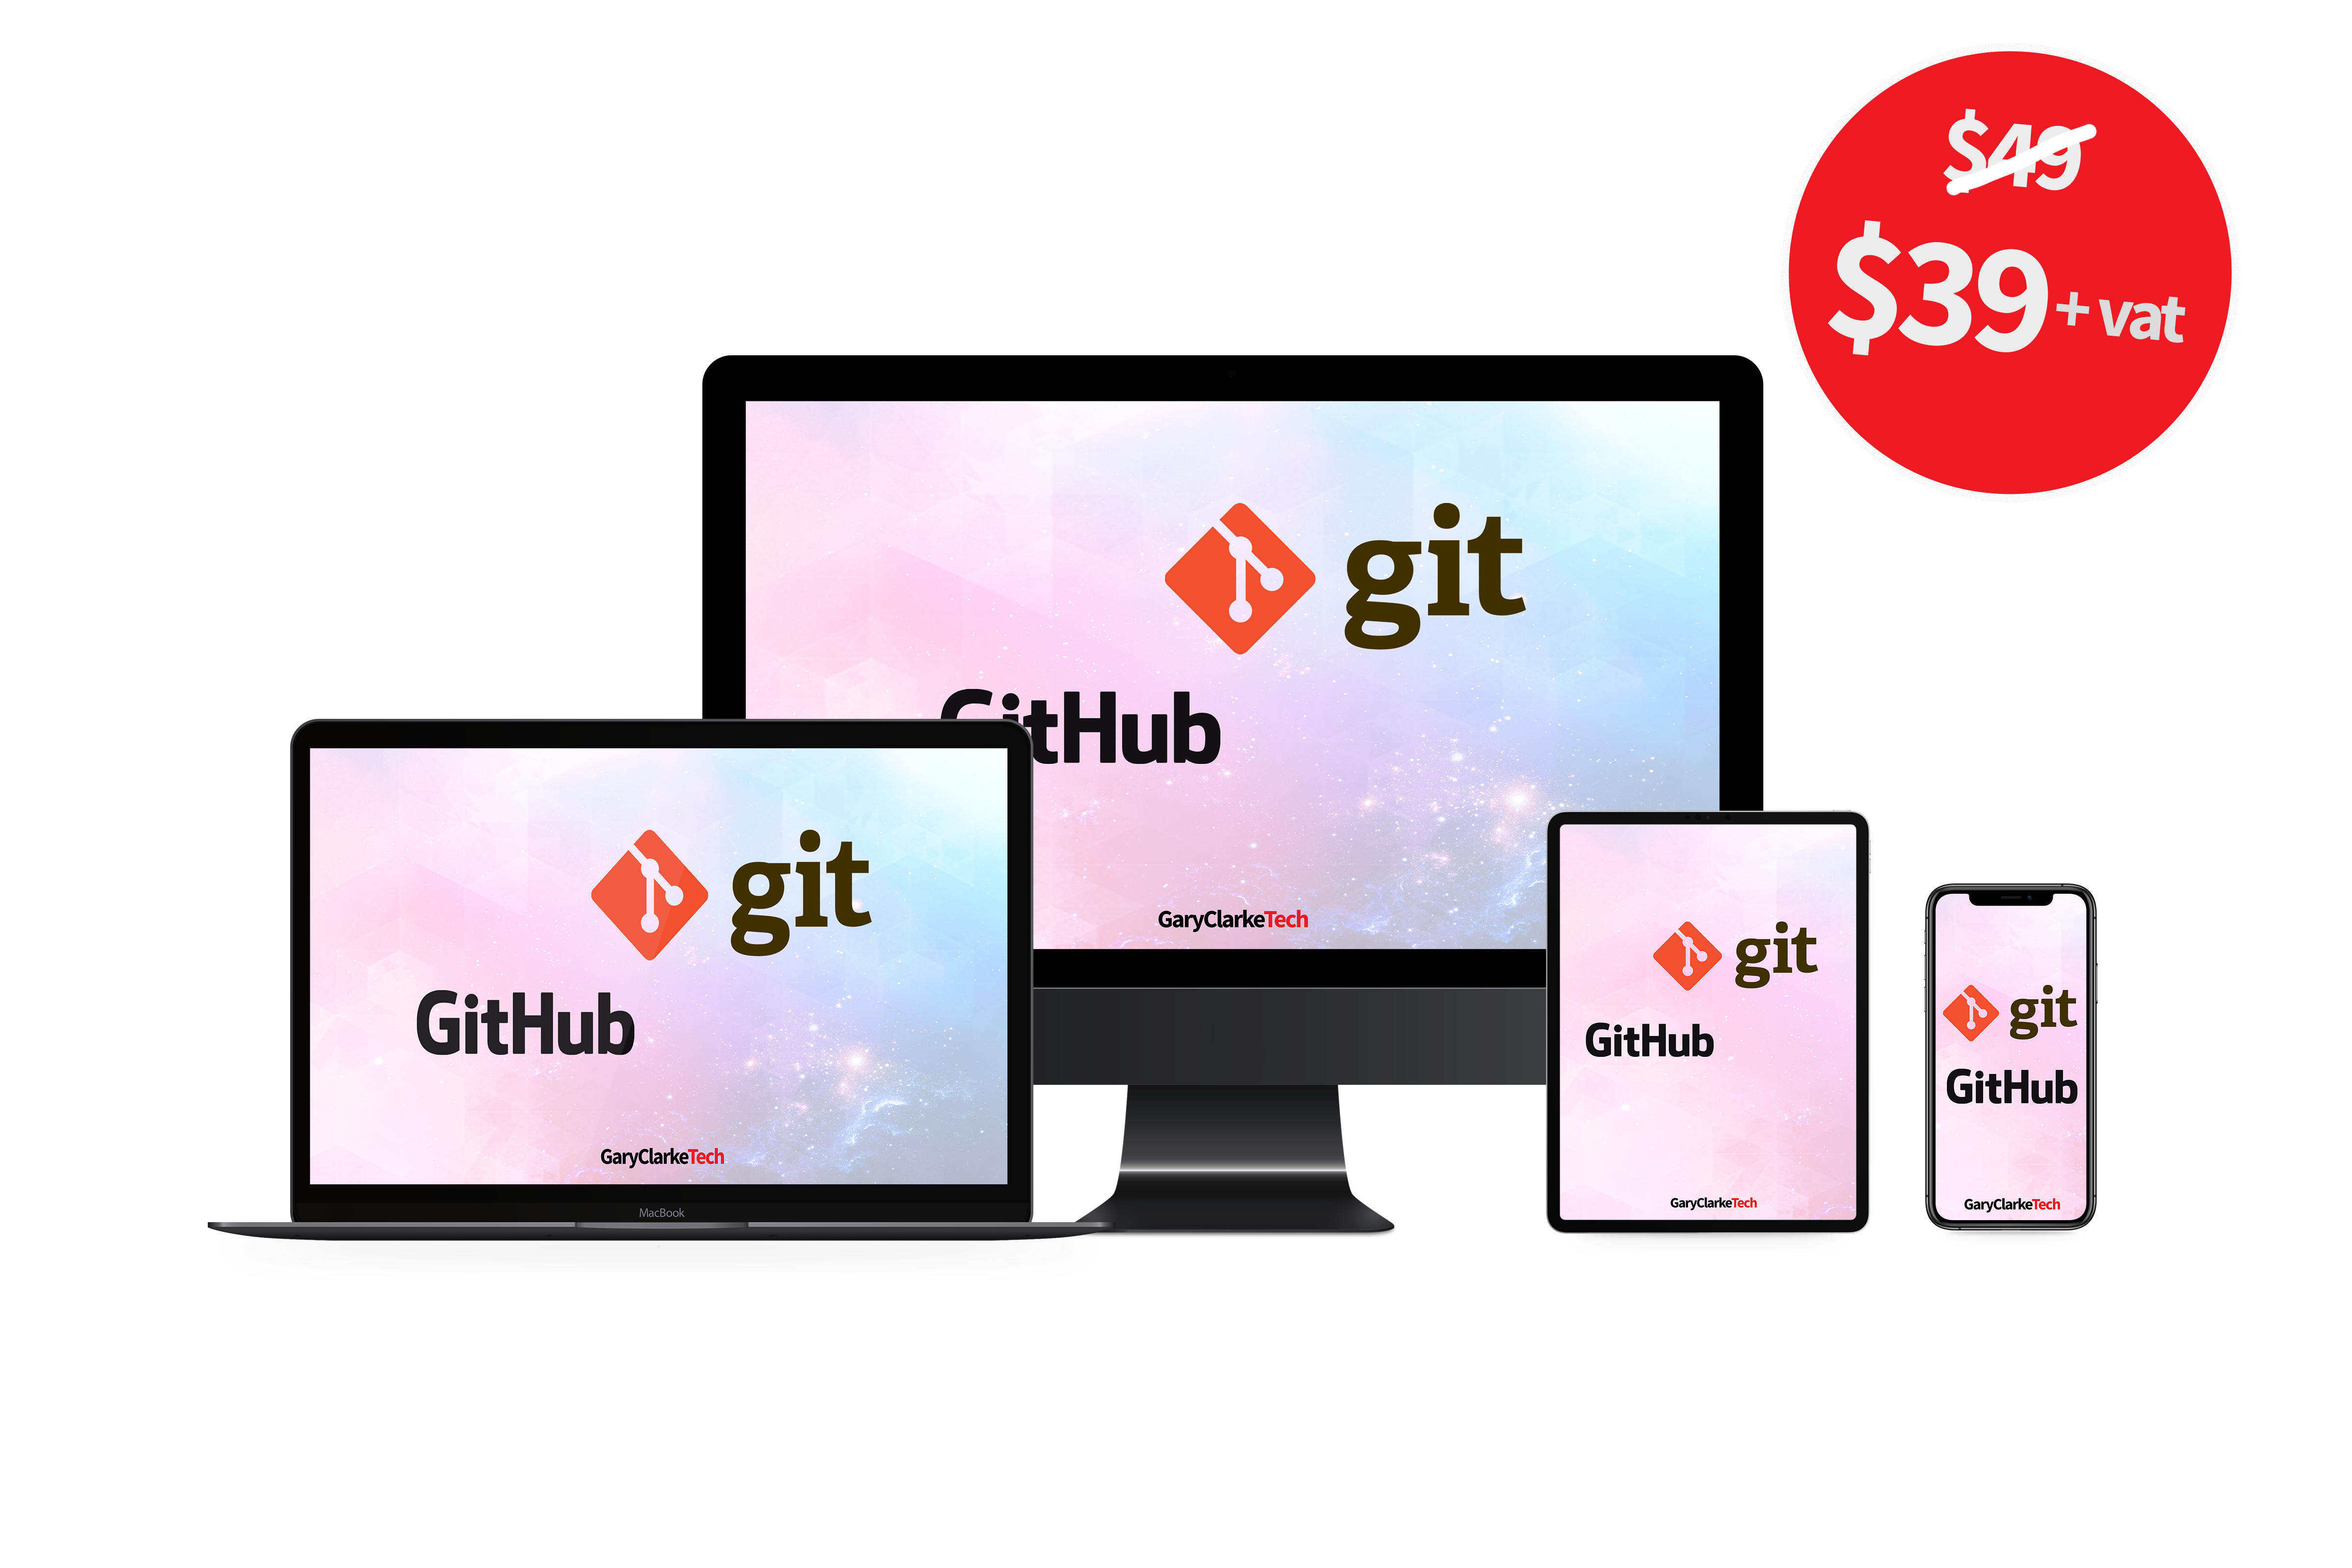 Git and Github logos